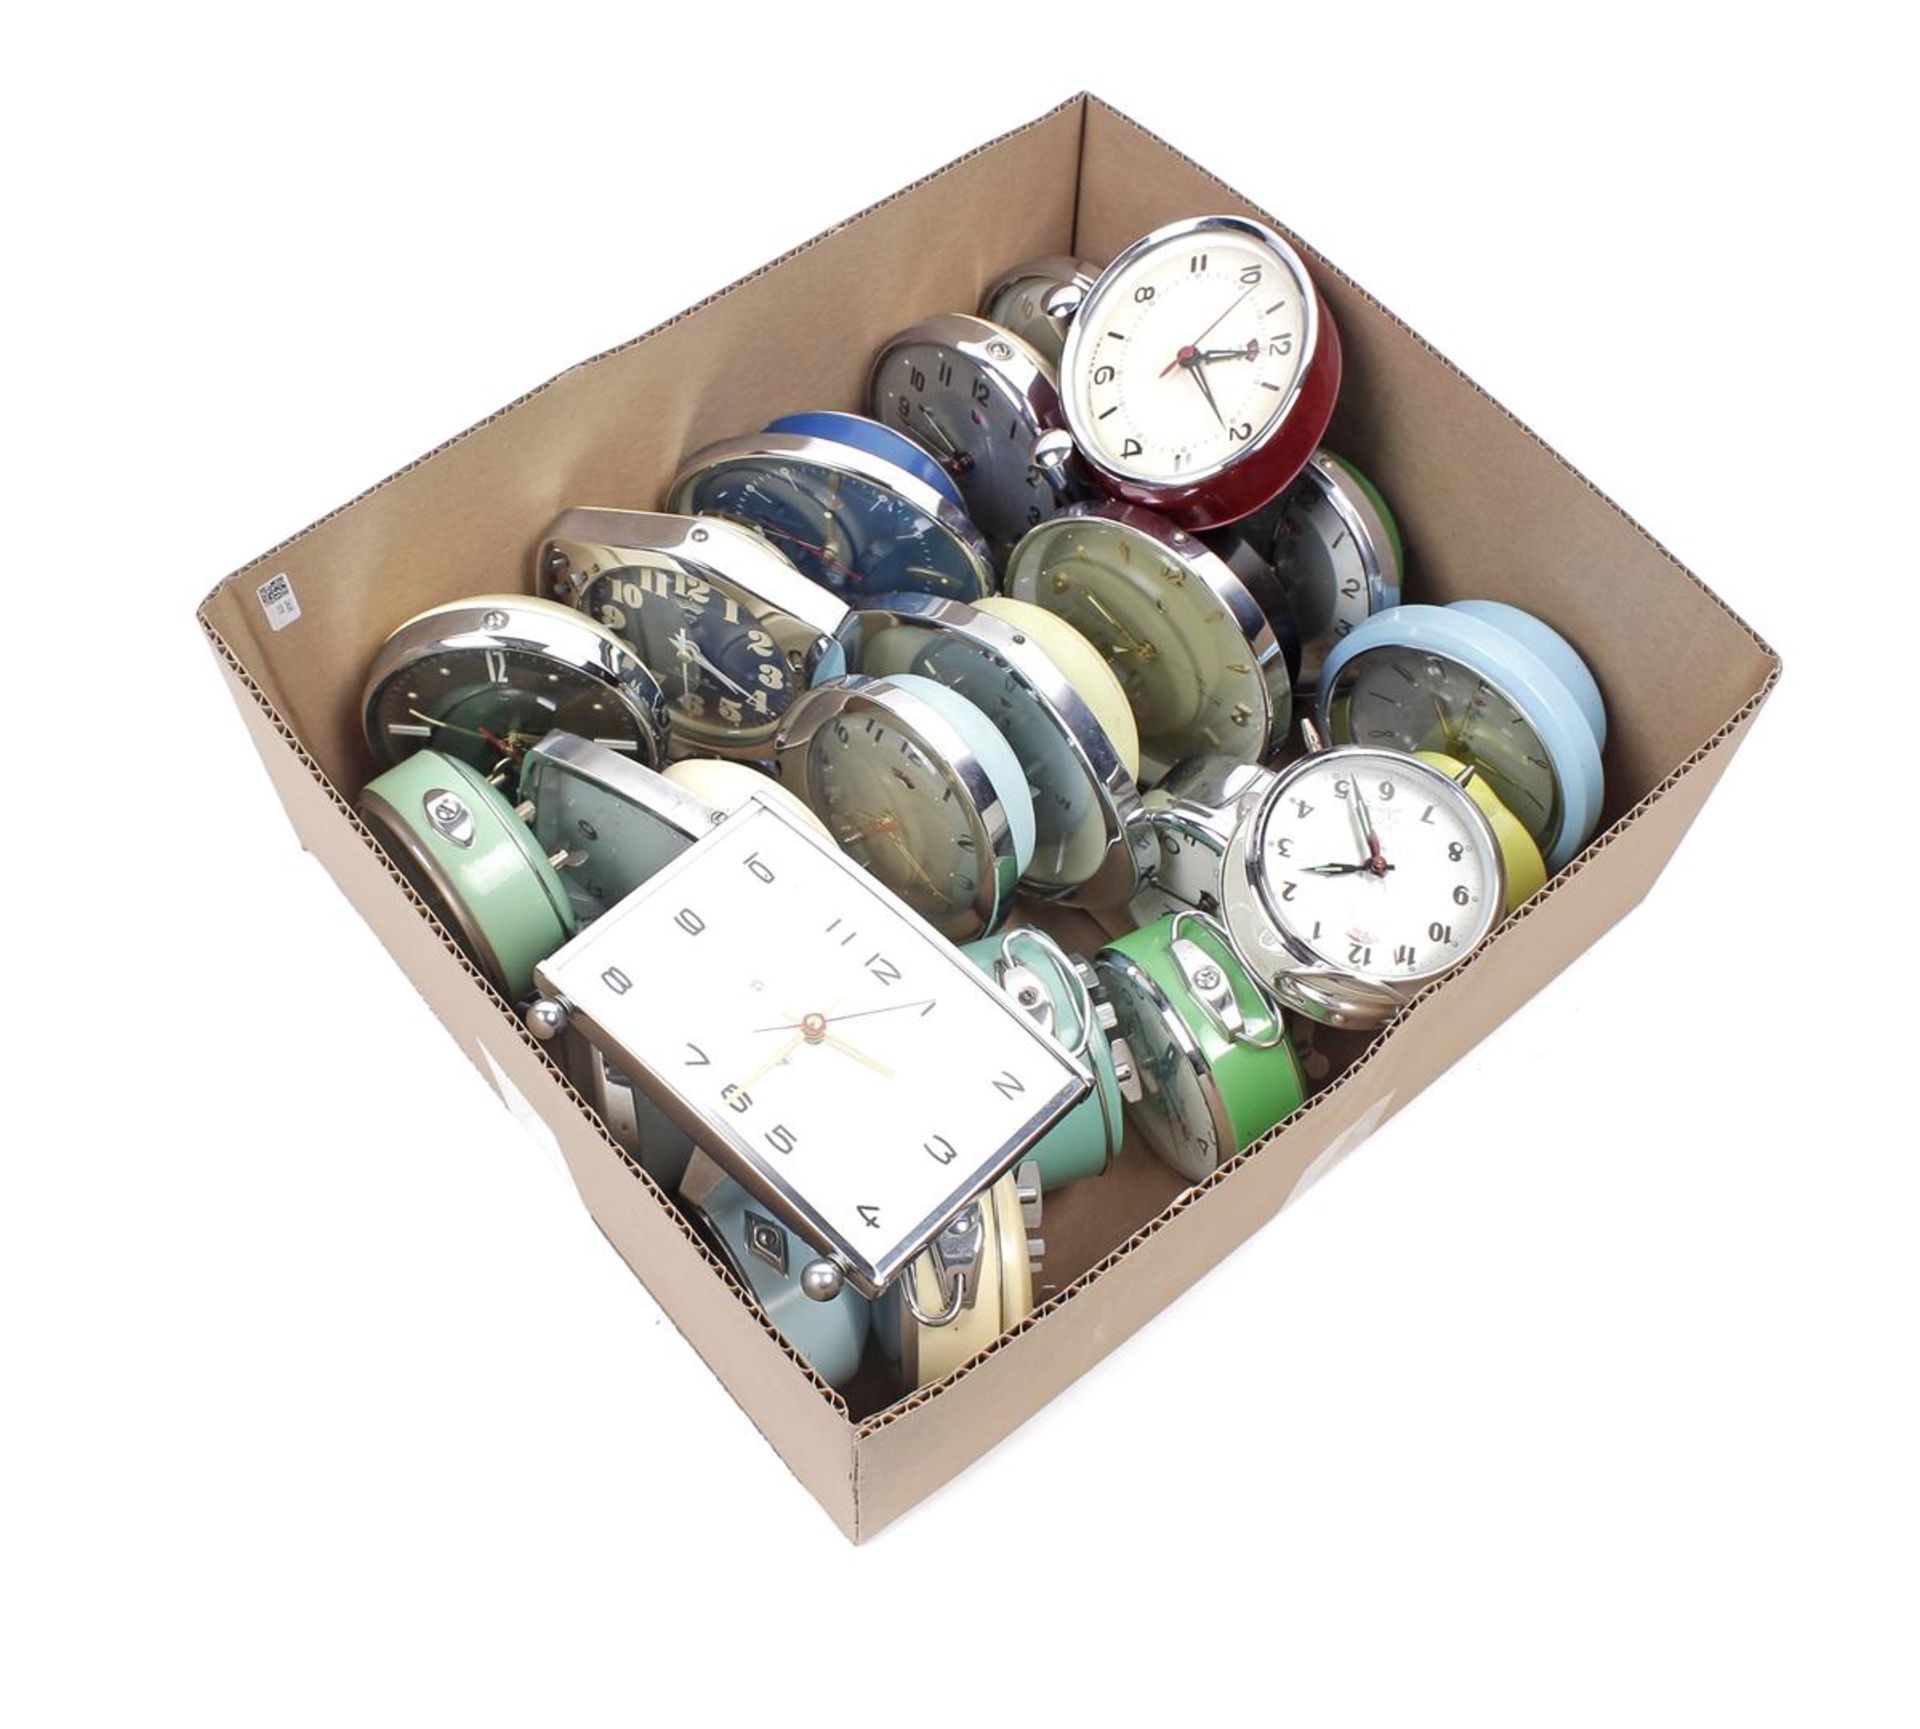 Box of 22 Chinese alarm clocks